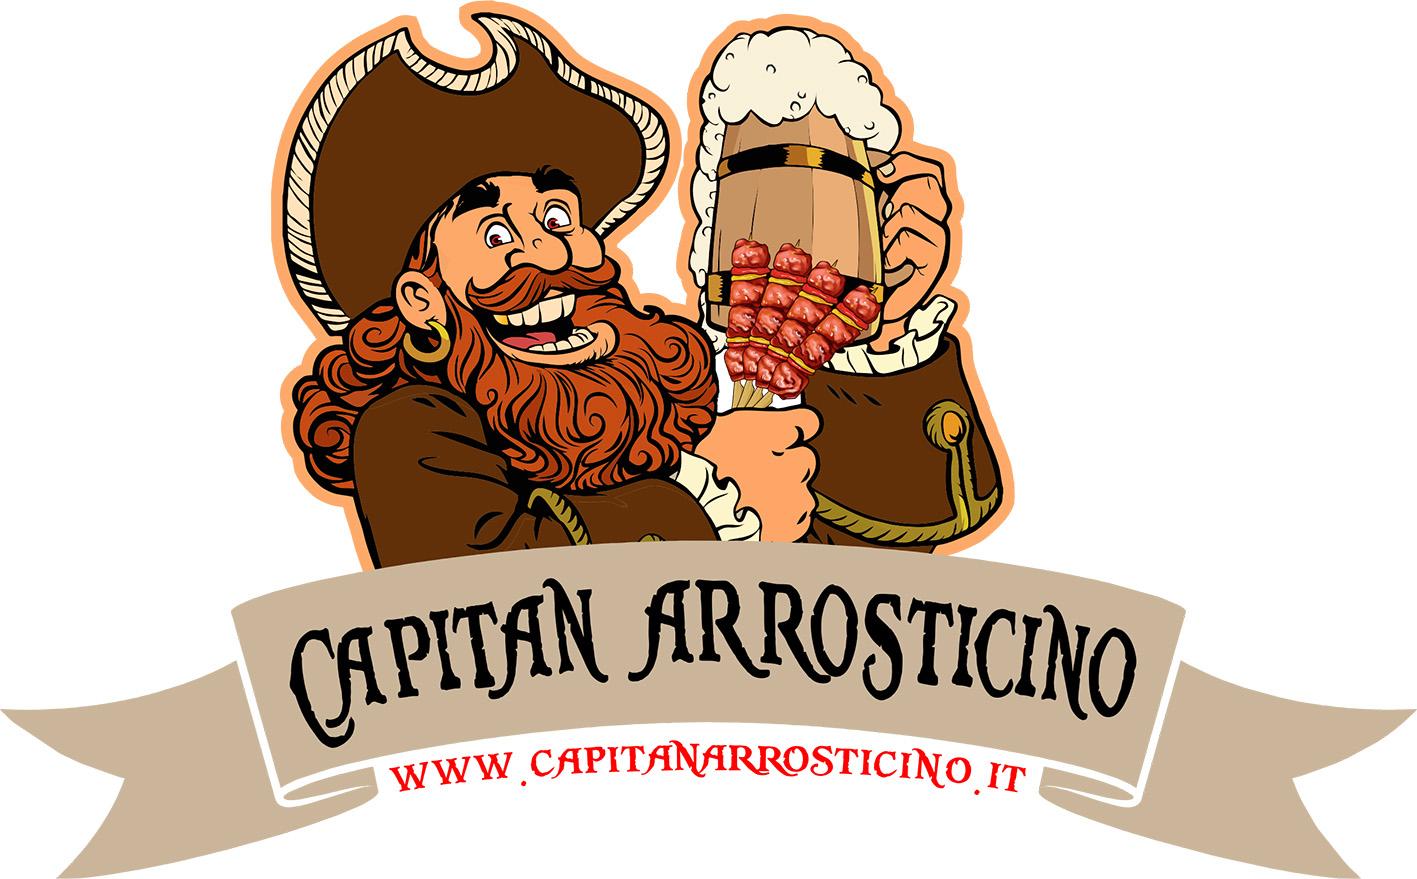 Capitan Arrosticino